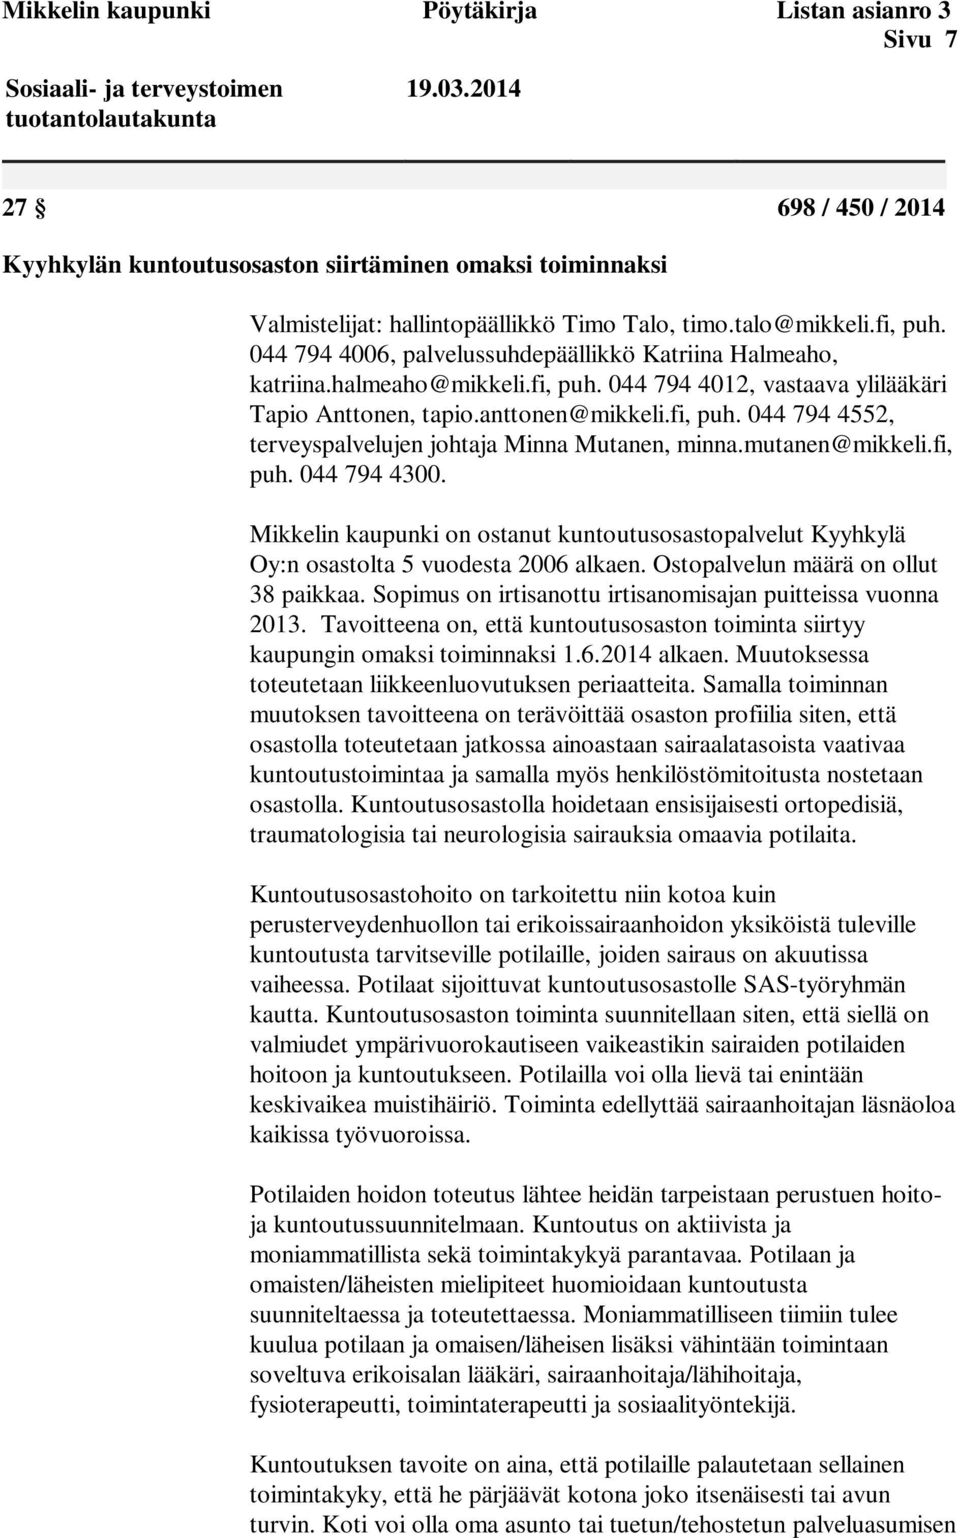 044 794 4006, palvelussuhdepäällikkö Katriina Halmeaho, katriina.halmeaho@mikkeli.fi, puh. 044 794 4012, vastaava ylilääkäri Tapio Anttonen, tapio.anttonen@mikkeli.fi, puh. 044 794 4552, terveyspalvelujen johtaja Minna Mutanen, minna.